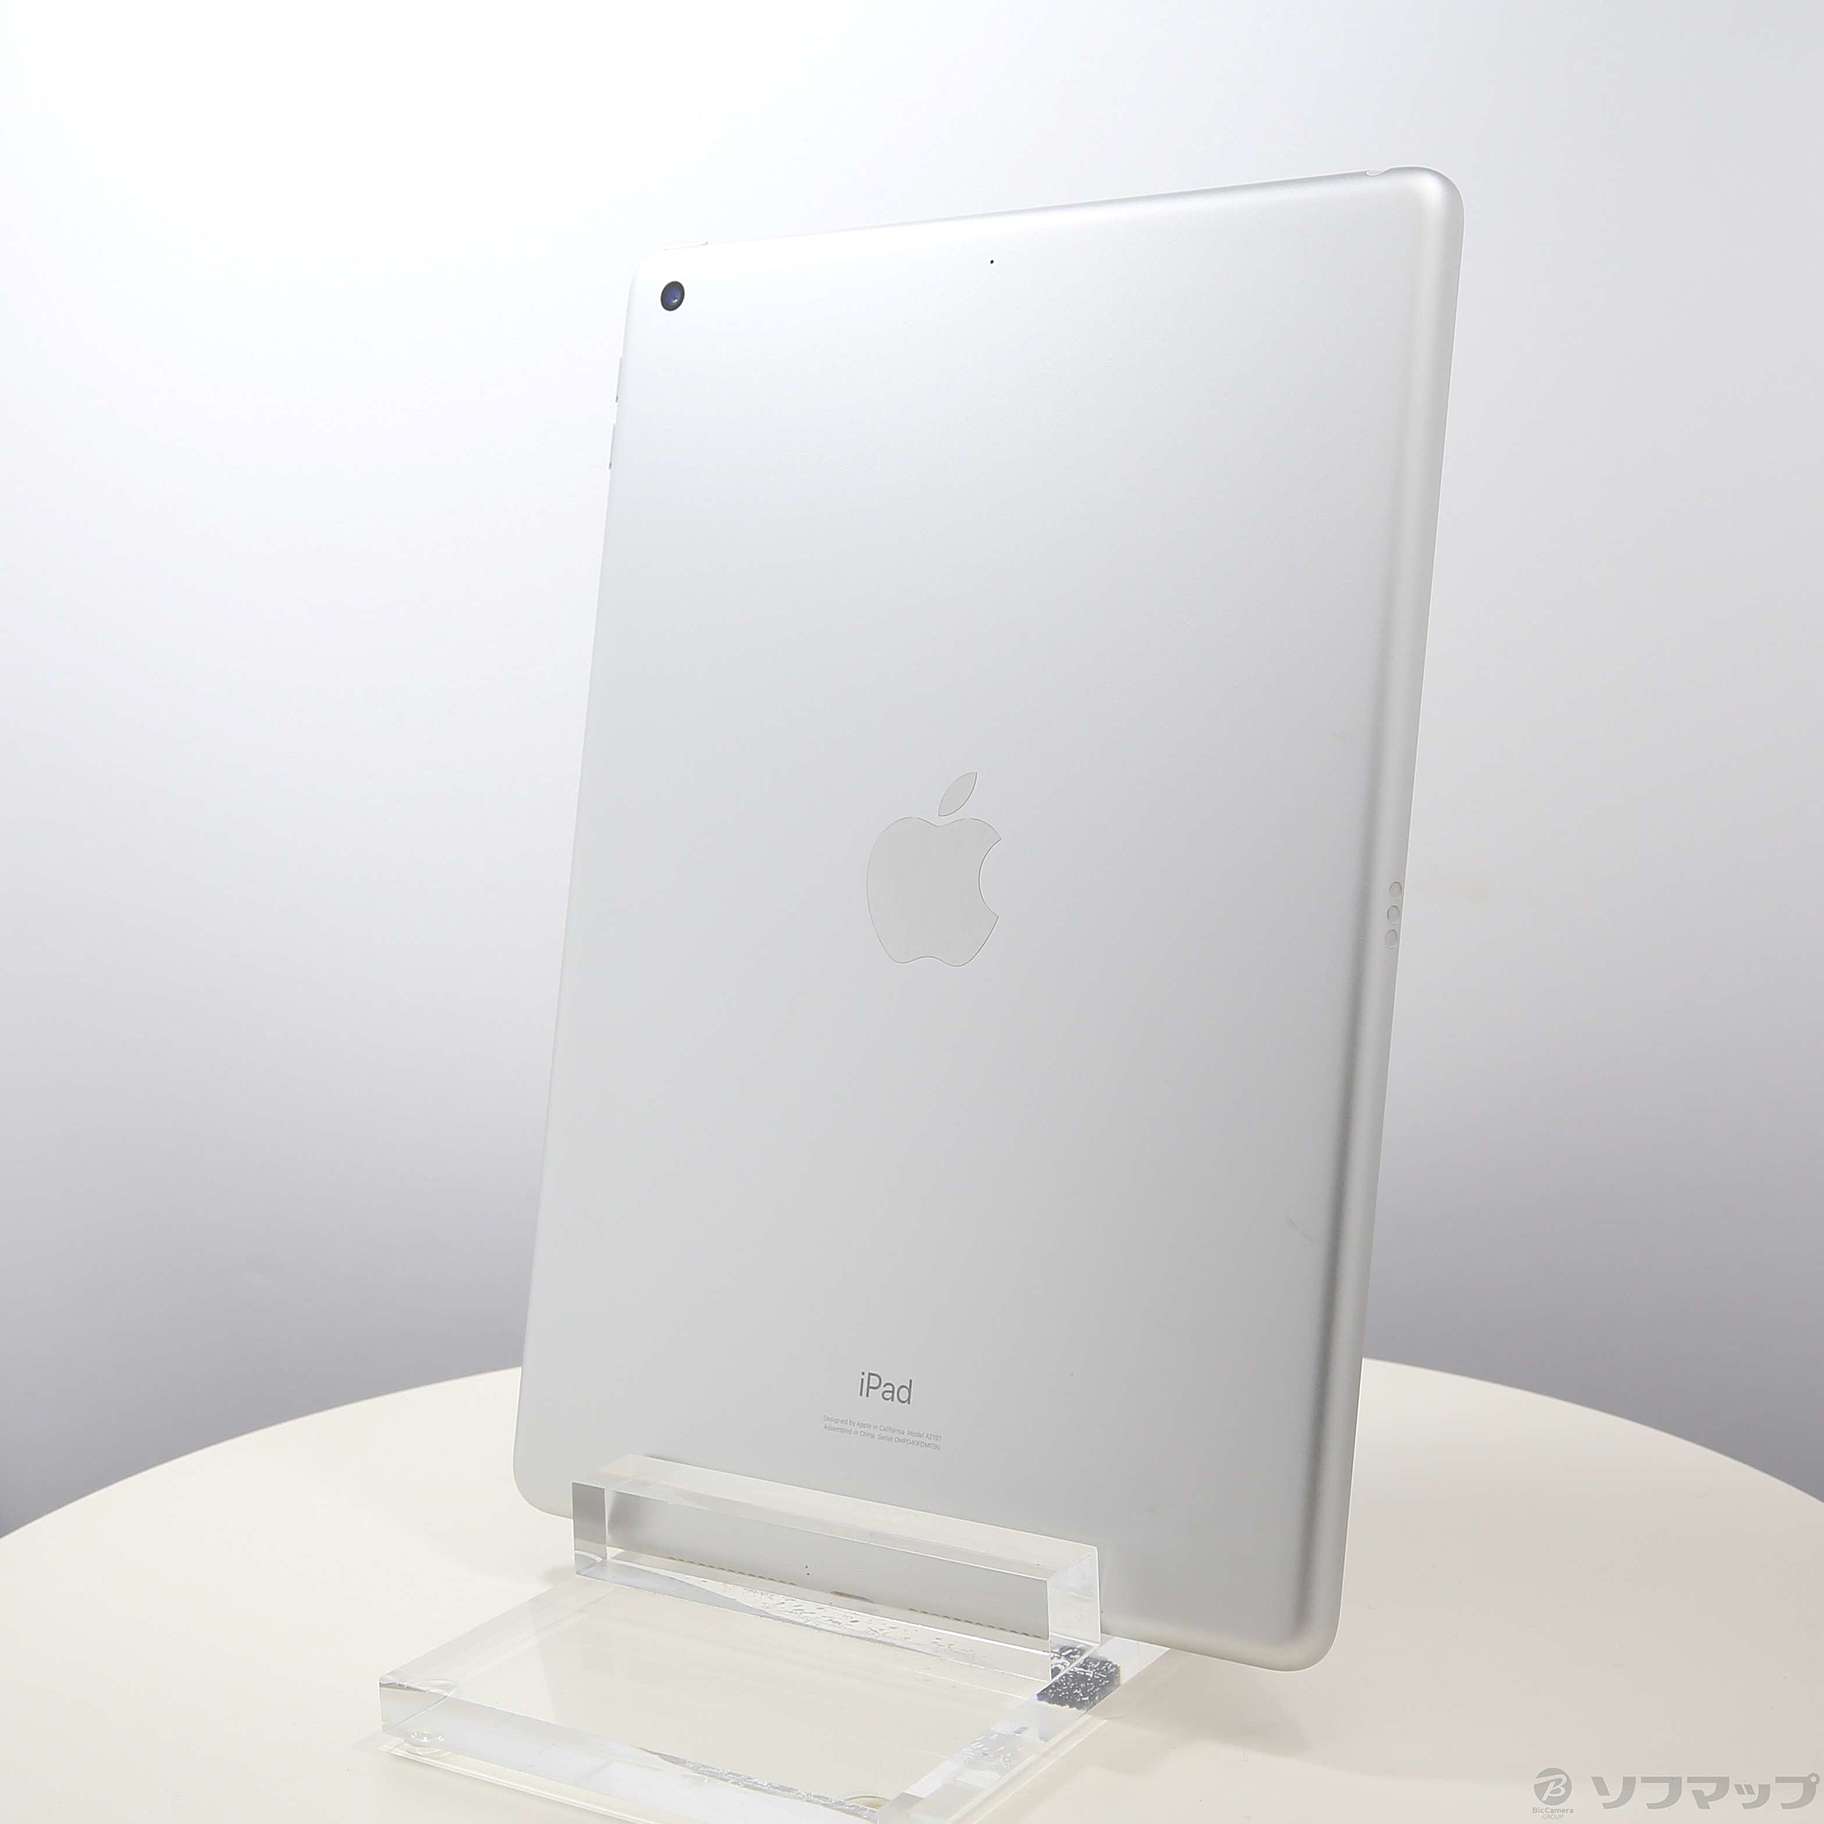 (中古)Apple iPad 第7世代 32GB シルバー MW752J/A Wi-Fi(305-ud)